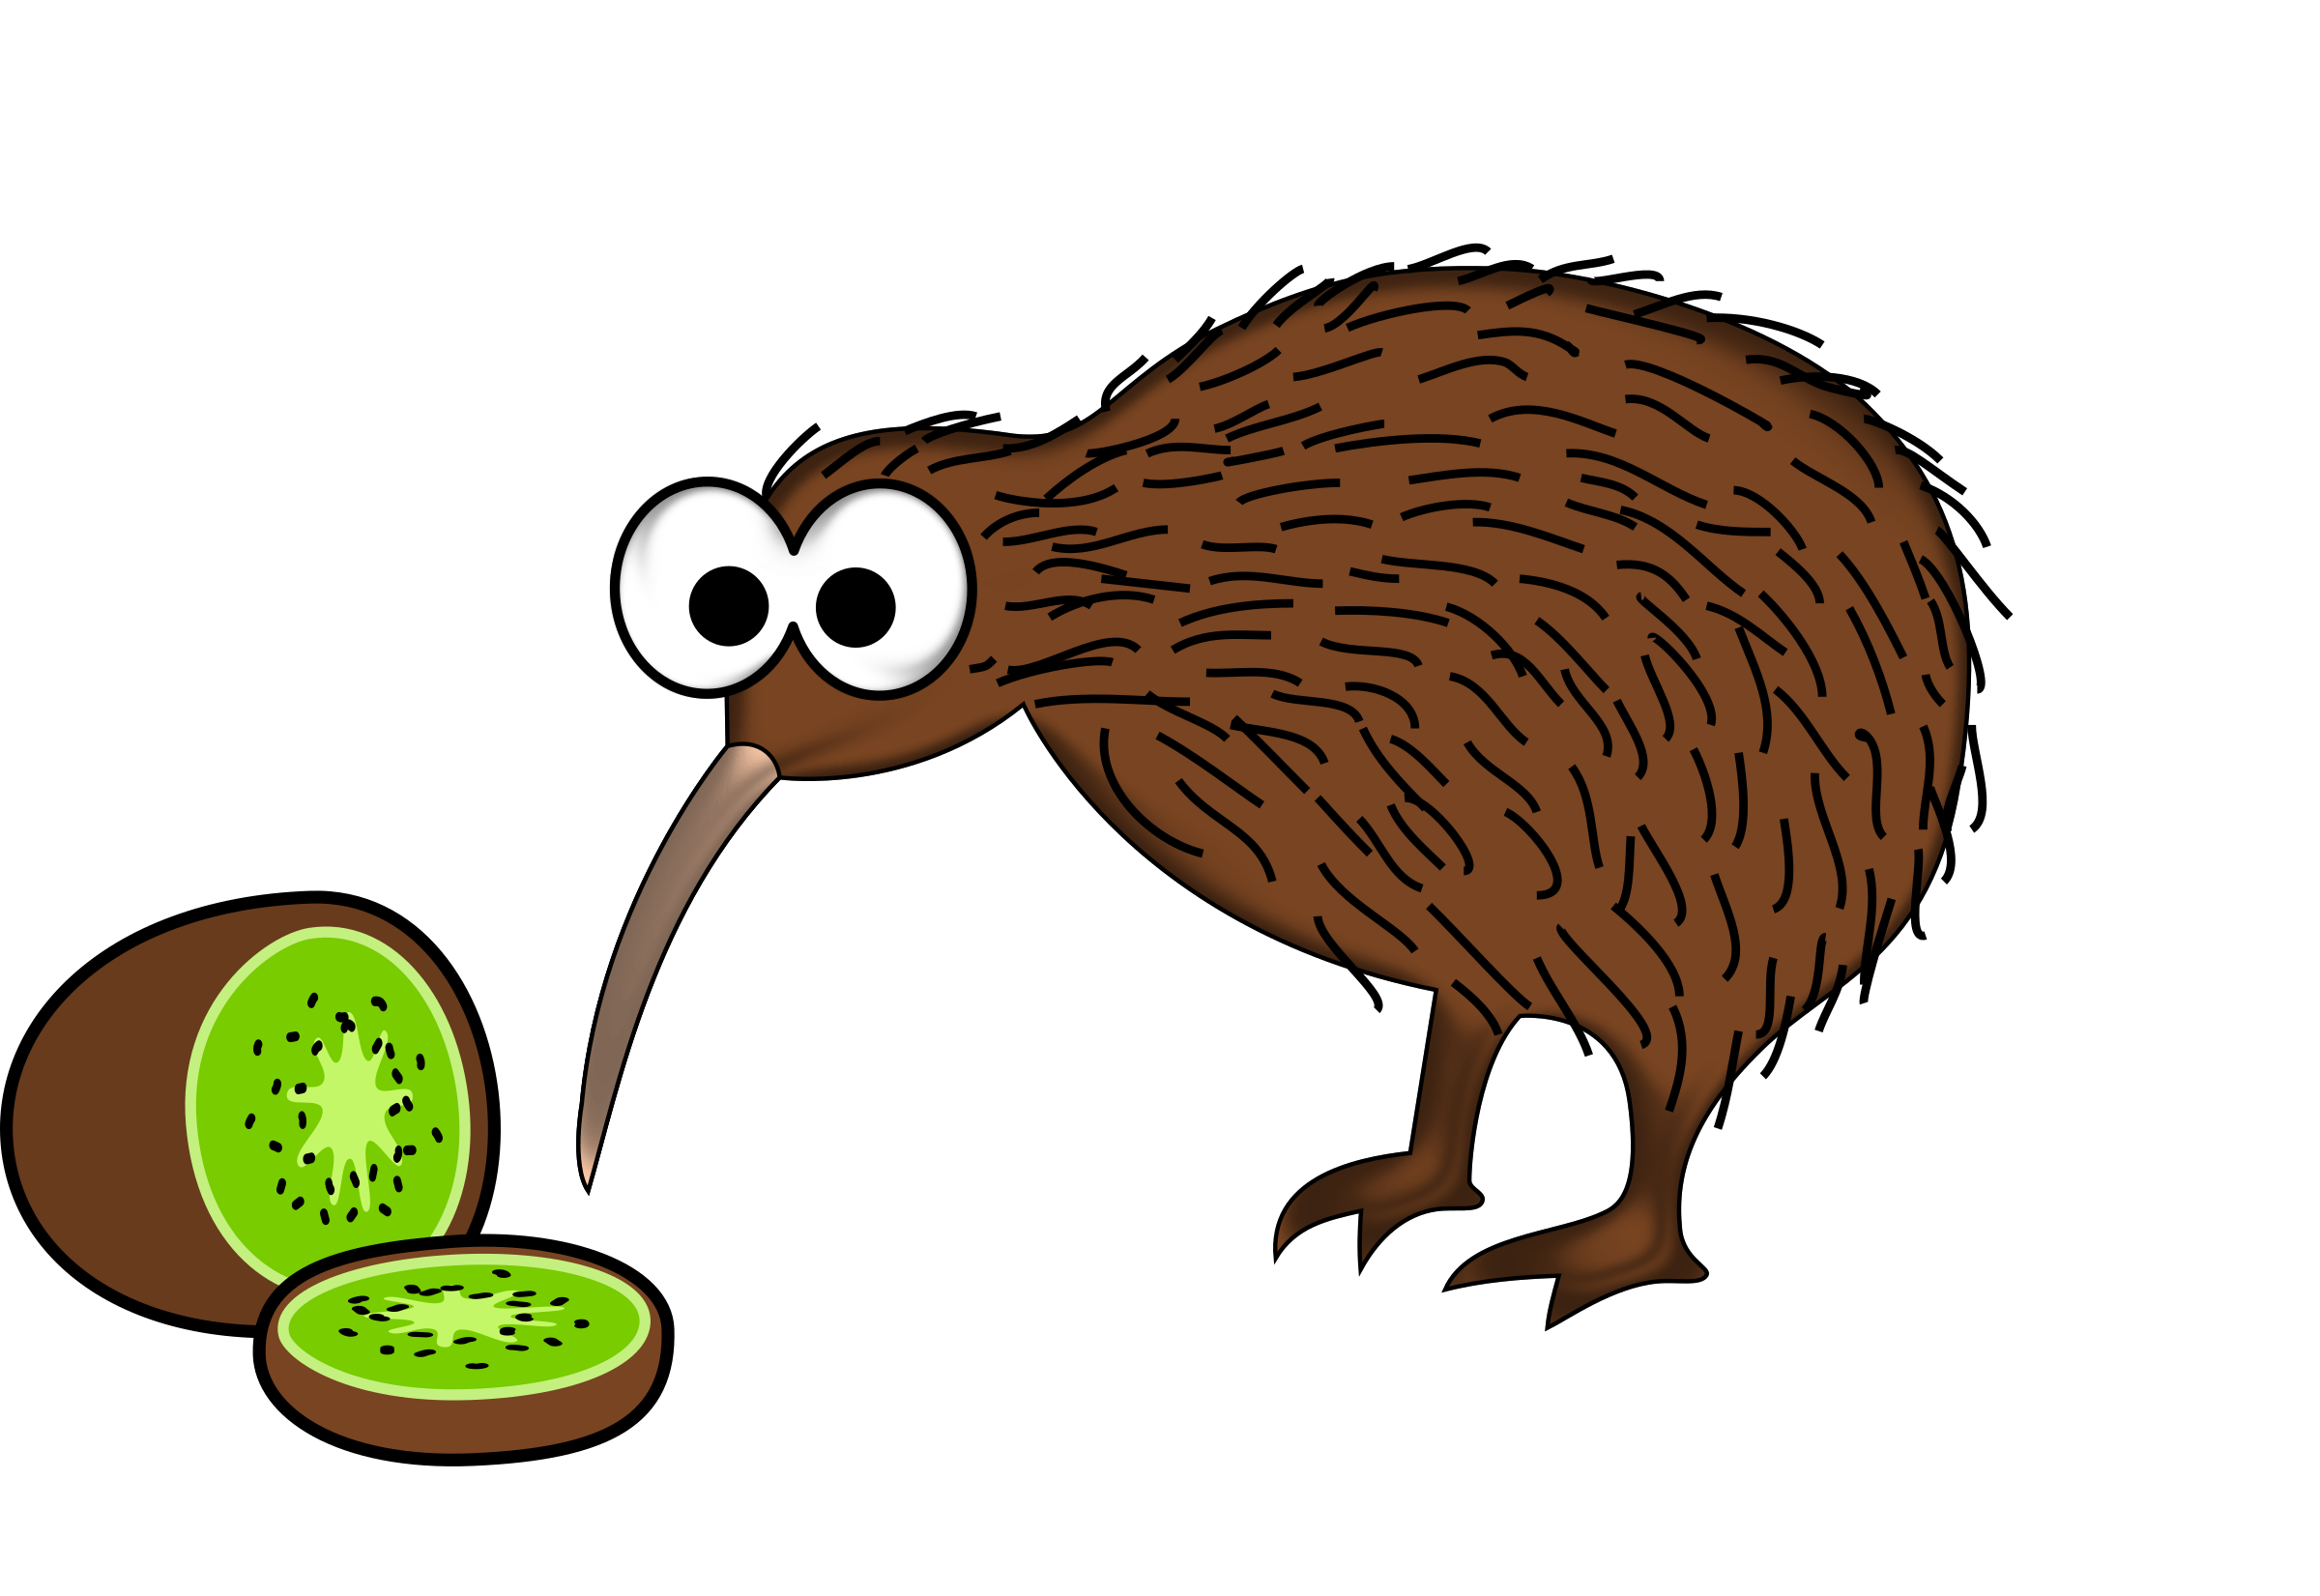 Big Image (Png) - Cartoon Kiwi Bird, Transparent background PNG HD thumbnail